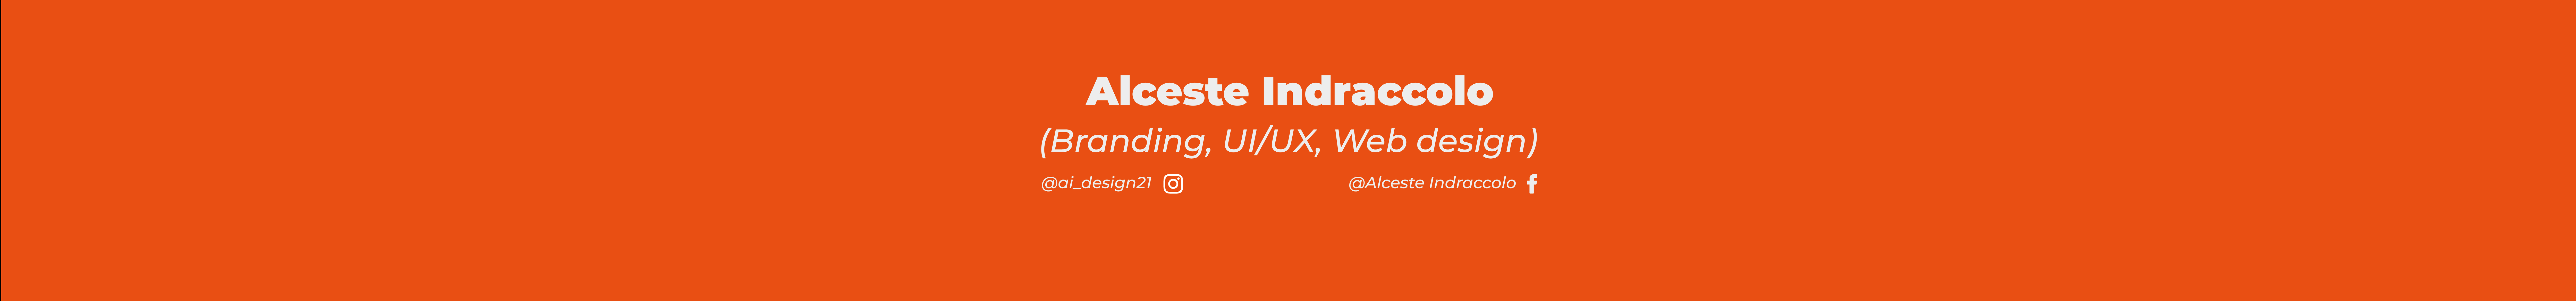 Alceste Indraccolo's profile banner